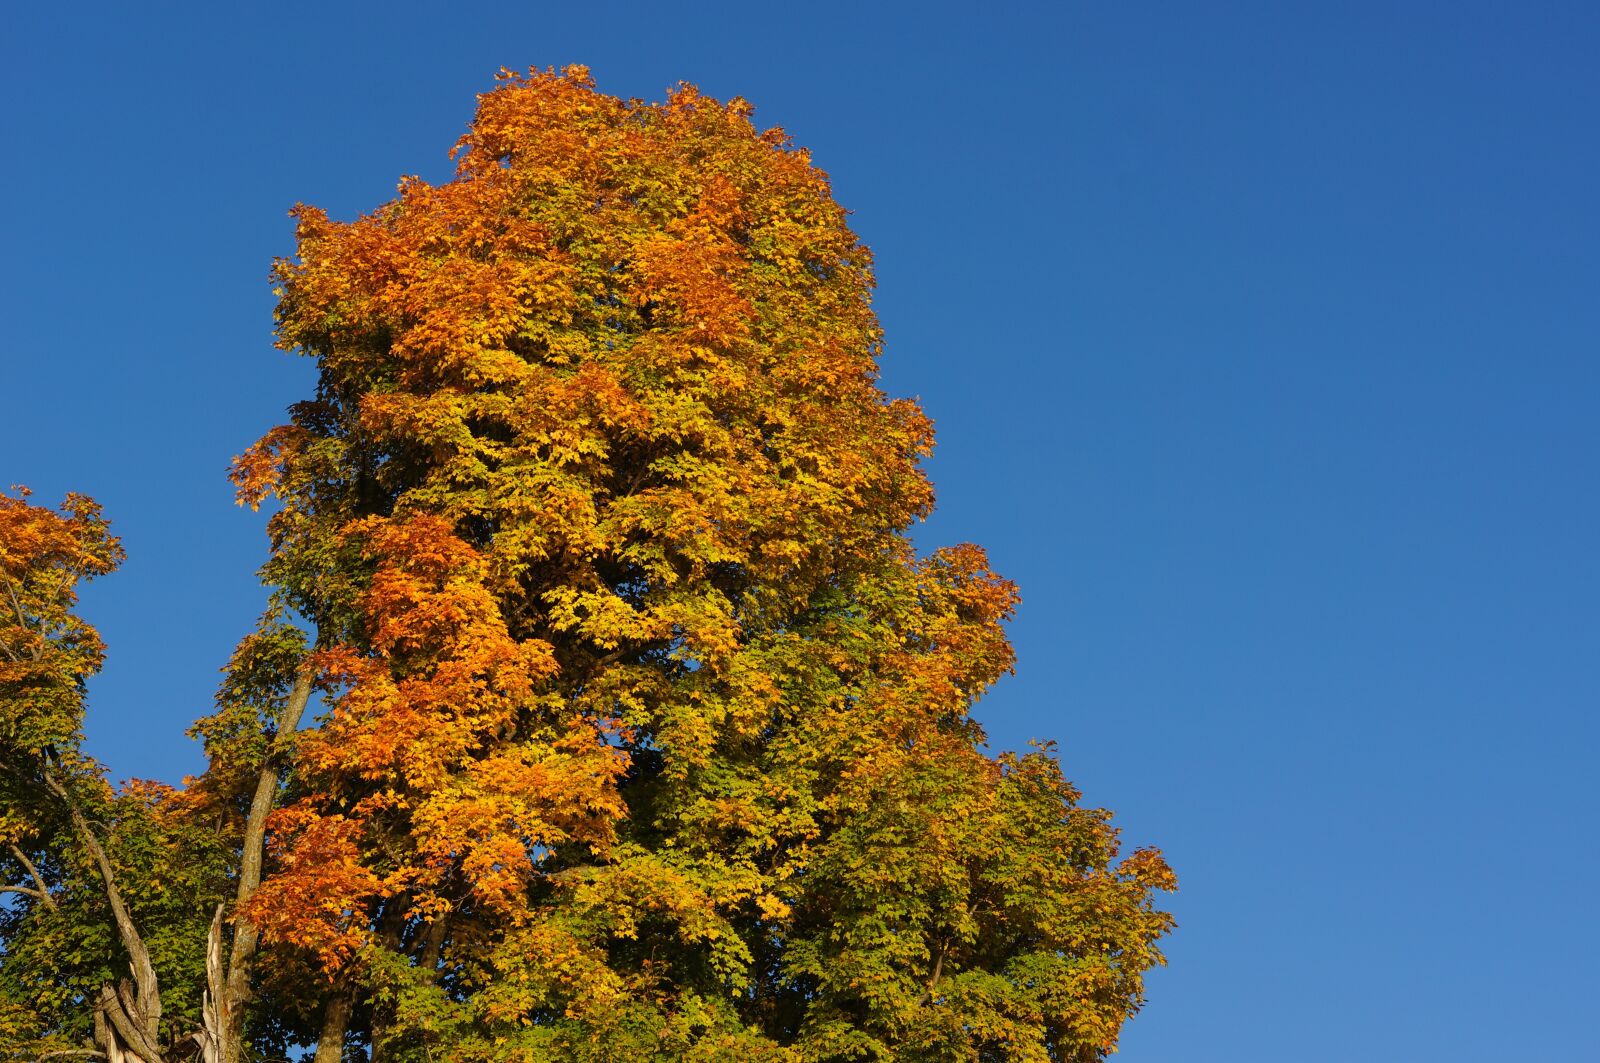 Sony E 18-200mm F3.5-6.3 OSS sample photo. Tree, autumn, fall photography